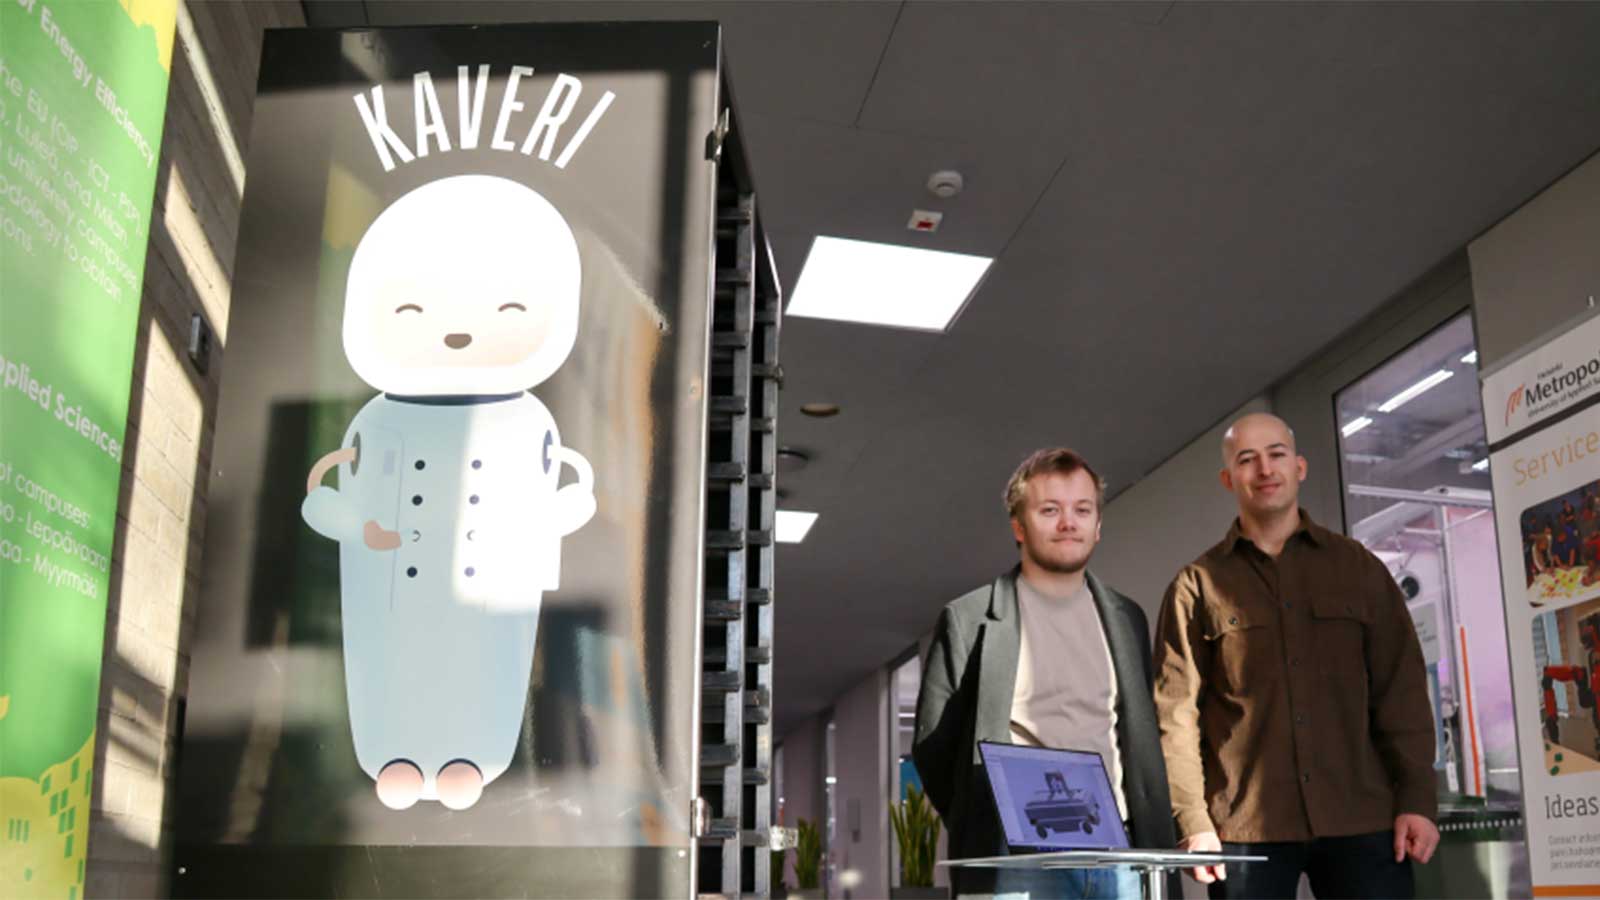 Kaveri-robotti ja kaksi opiskelijaa Myyrmäen kampuksen käytävällä.